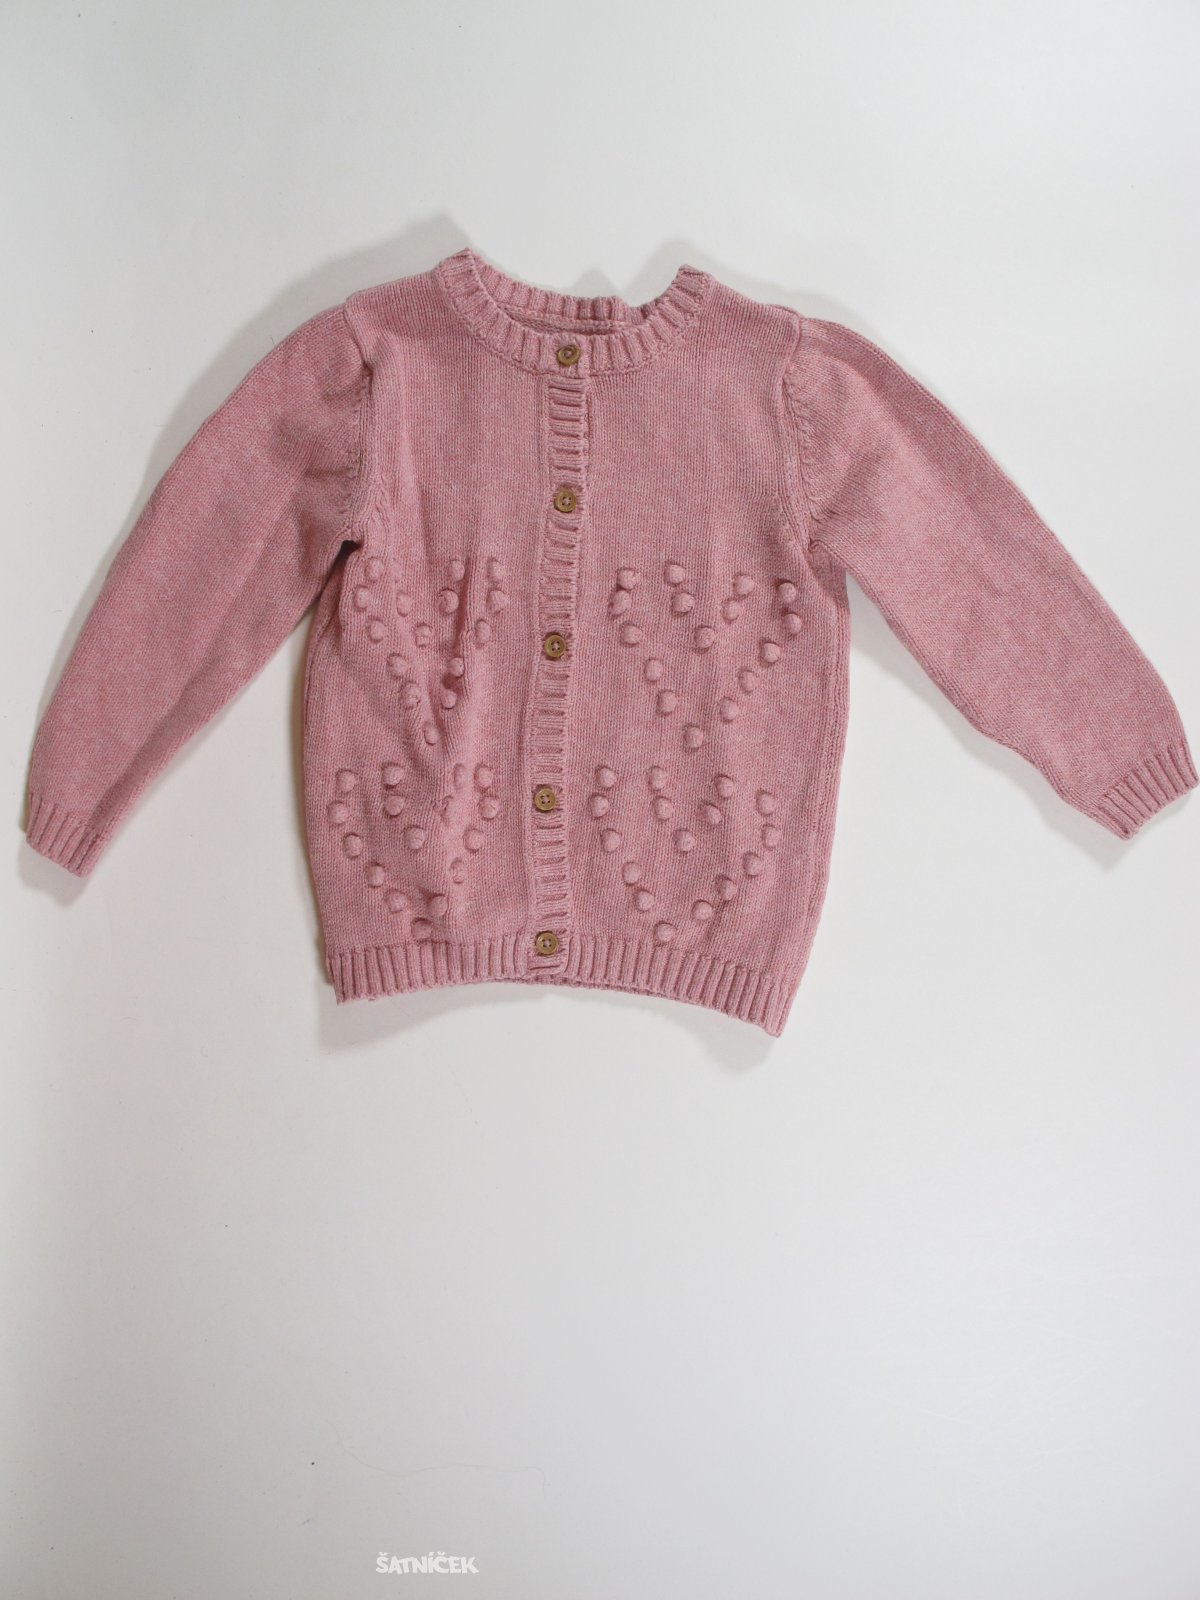 Růžový svetr pro holky secondhand